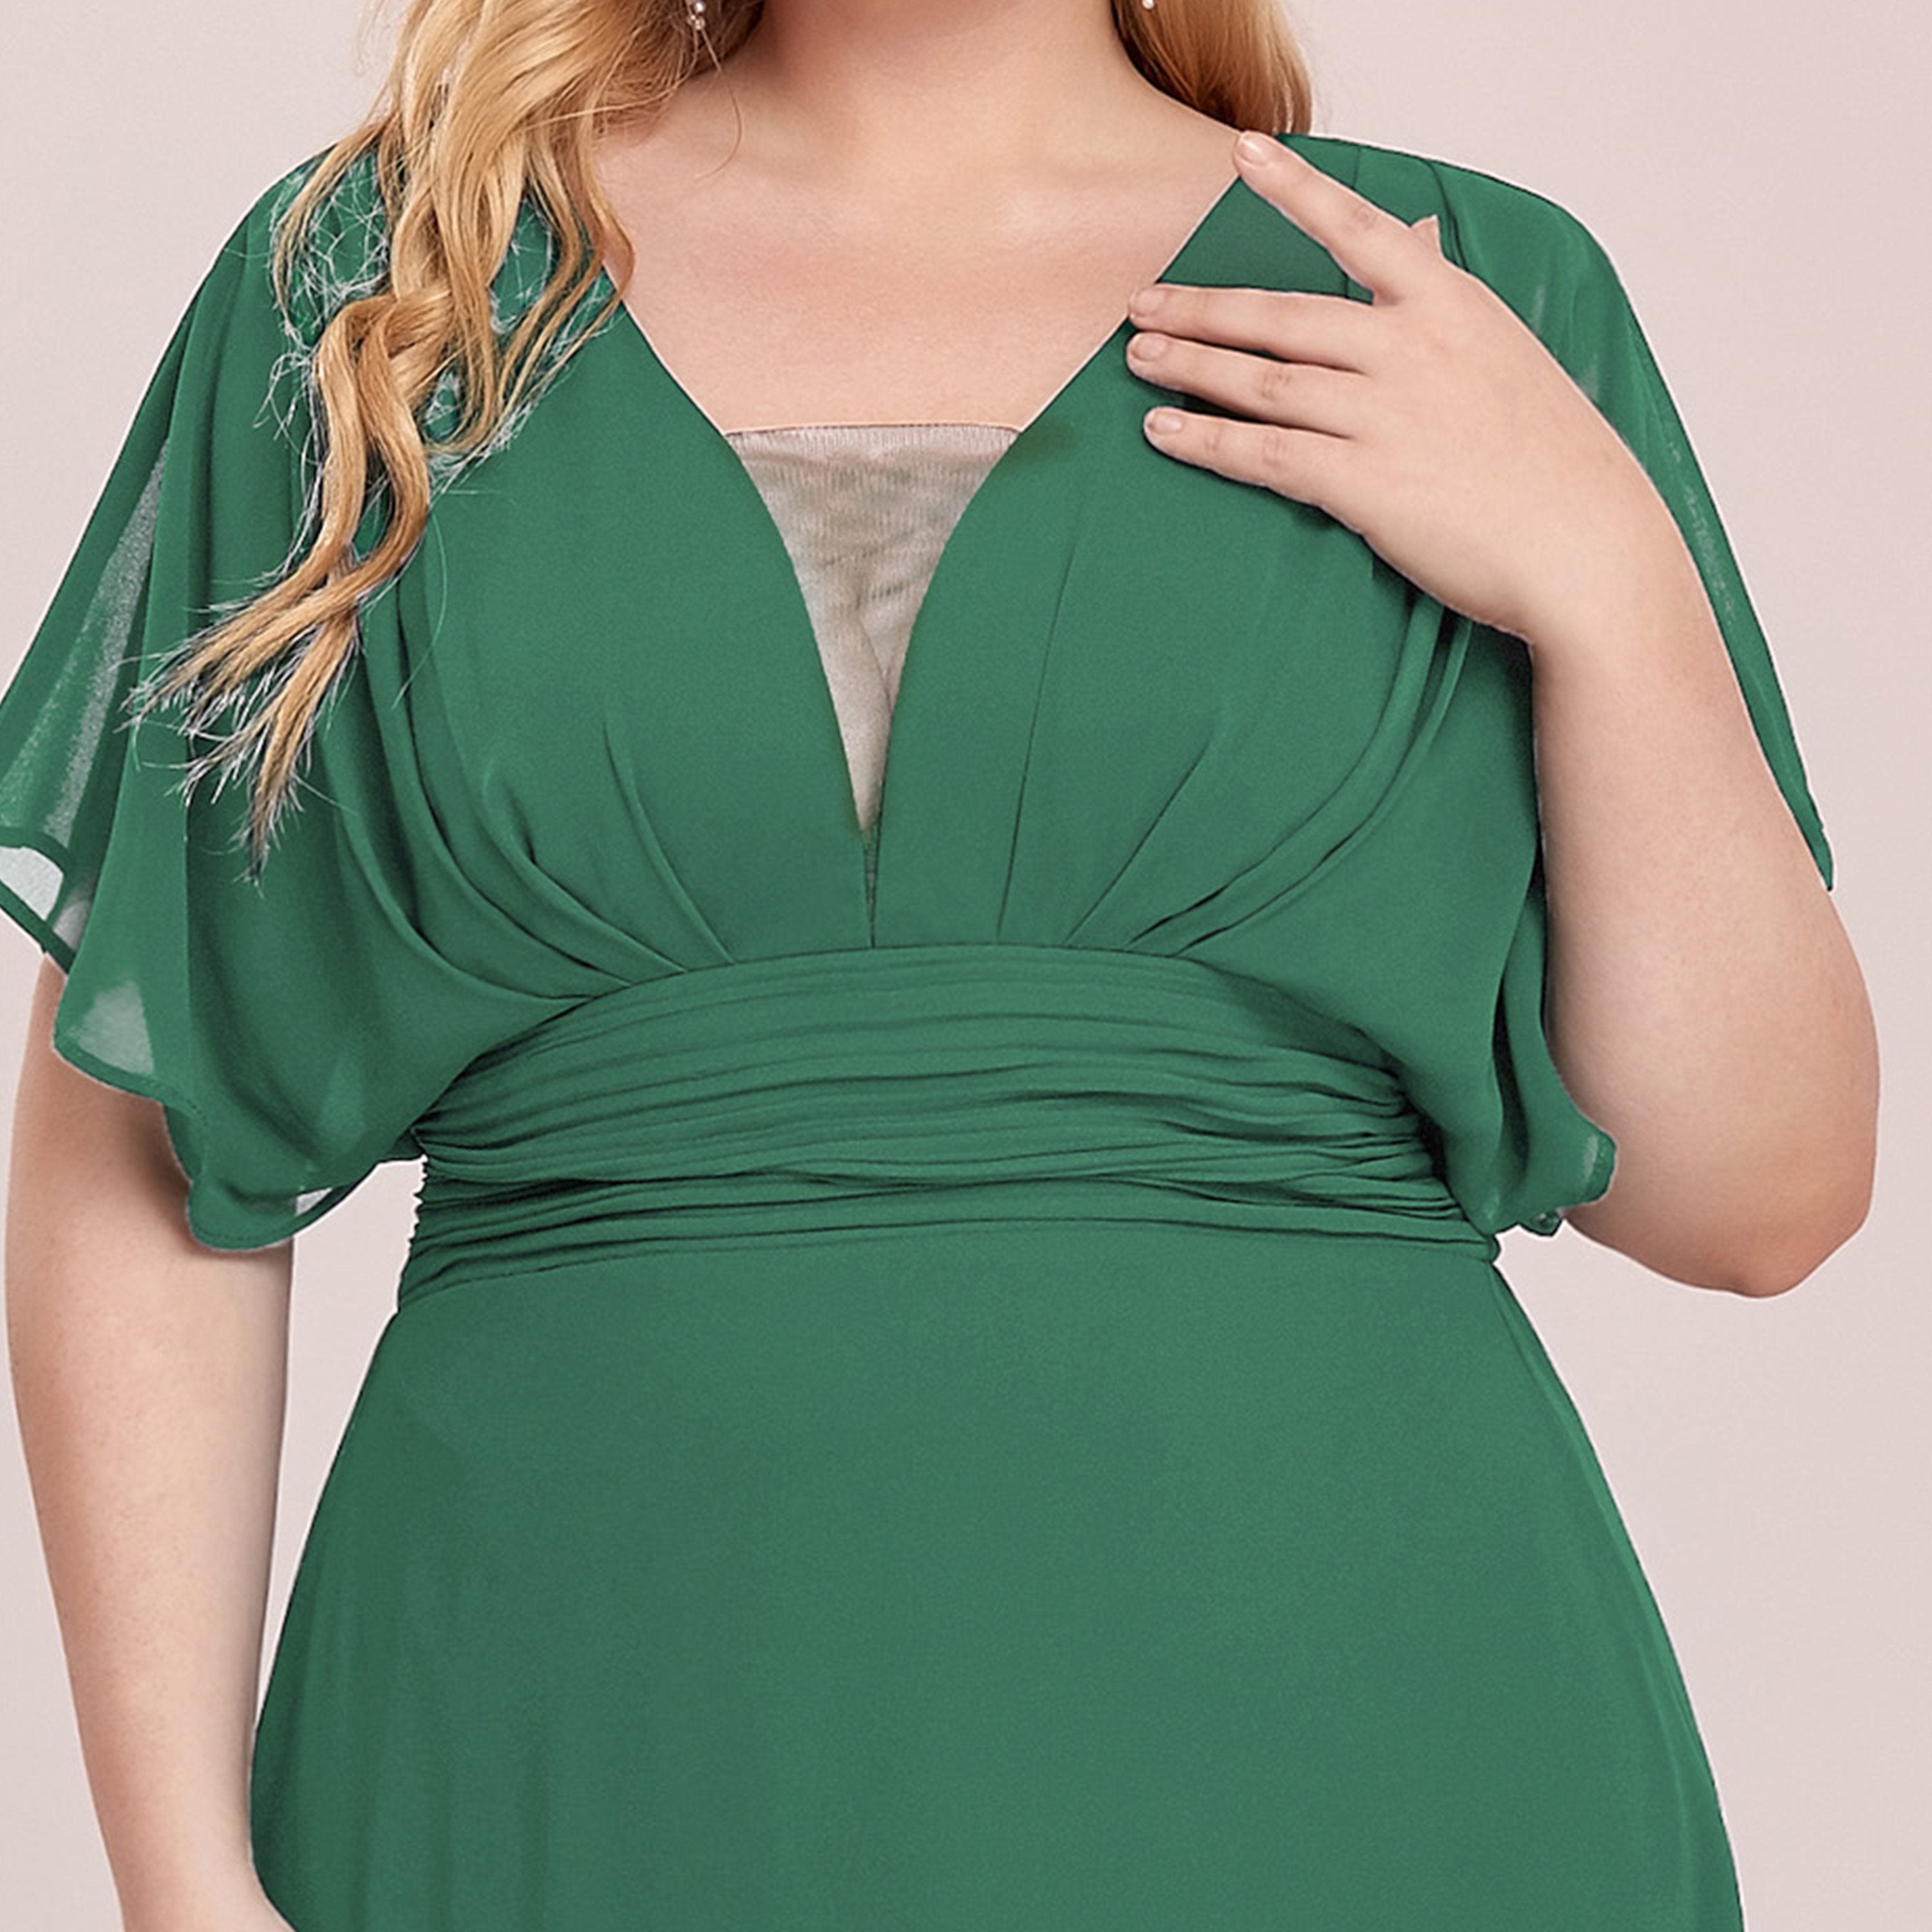 COLOR=Green Bean | Plus Size Women'S A-Line Empire Waist Evening Party Maxi Dress-Green Bean 5